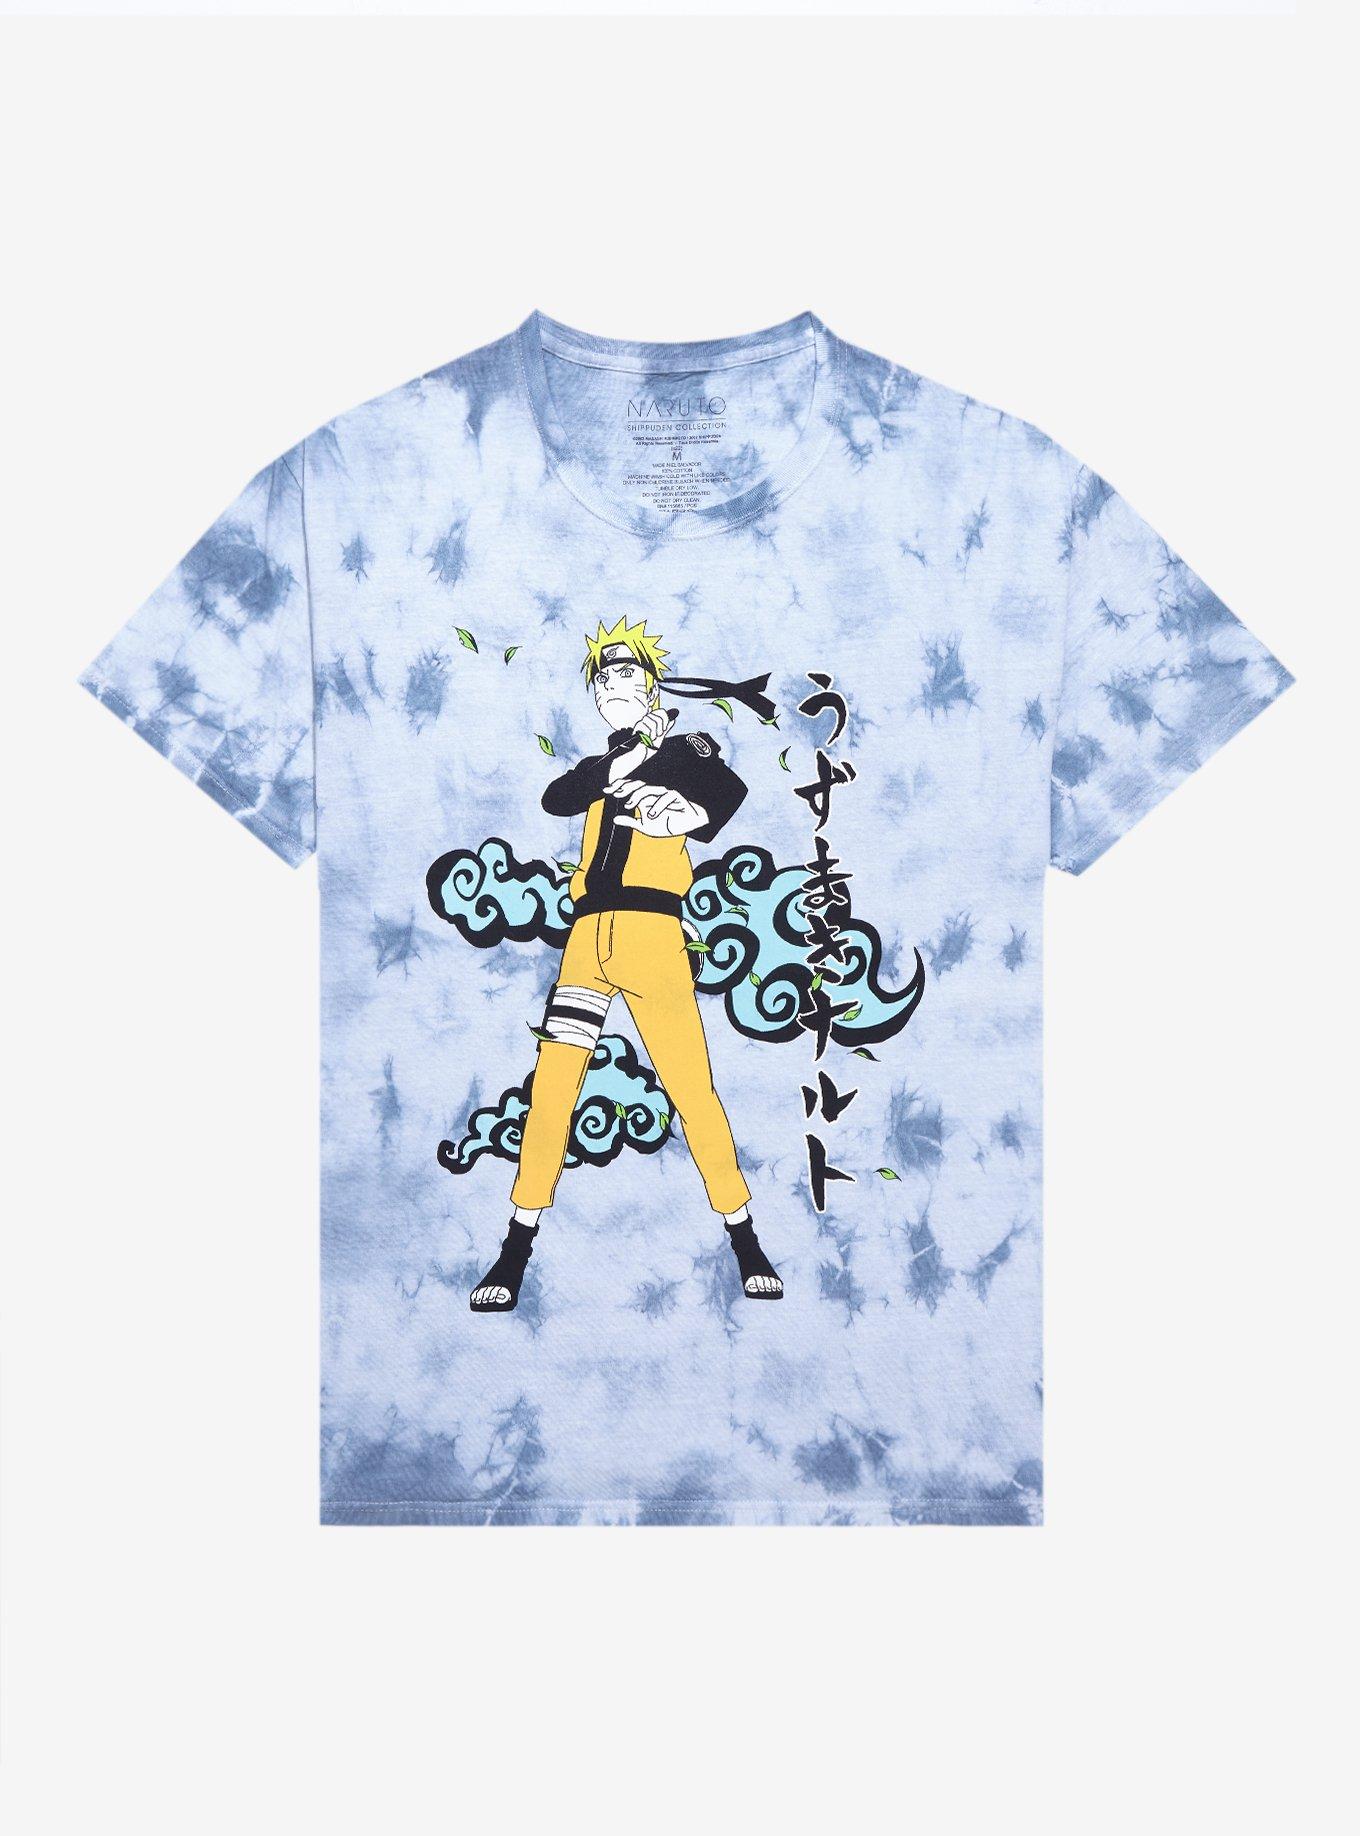 Naruto Shippuden Blue Cloud Wash T-Shirt | Hot Topic